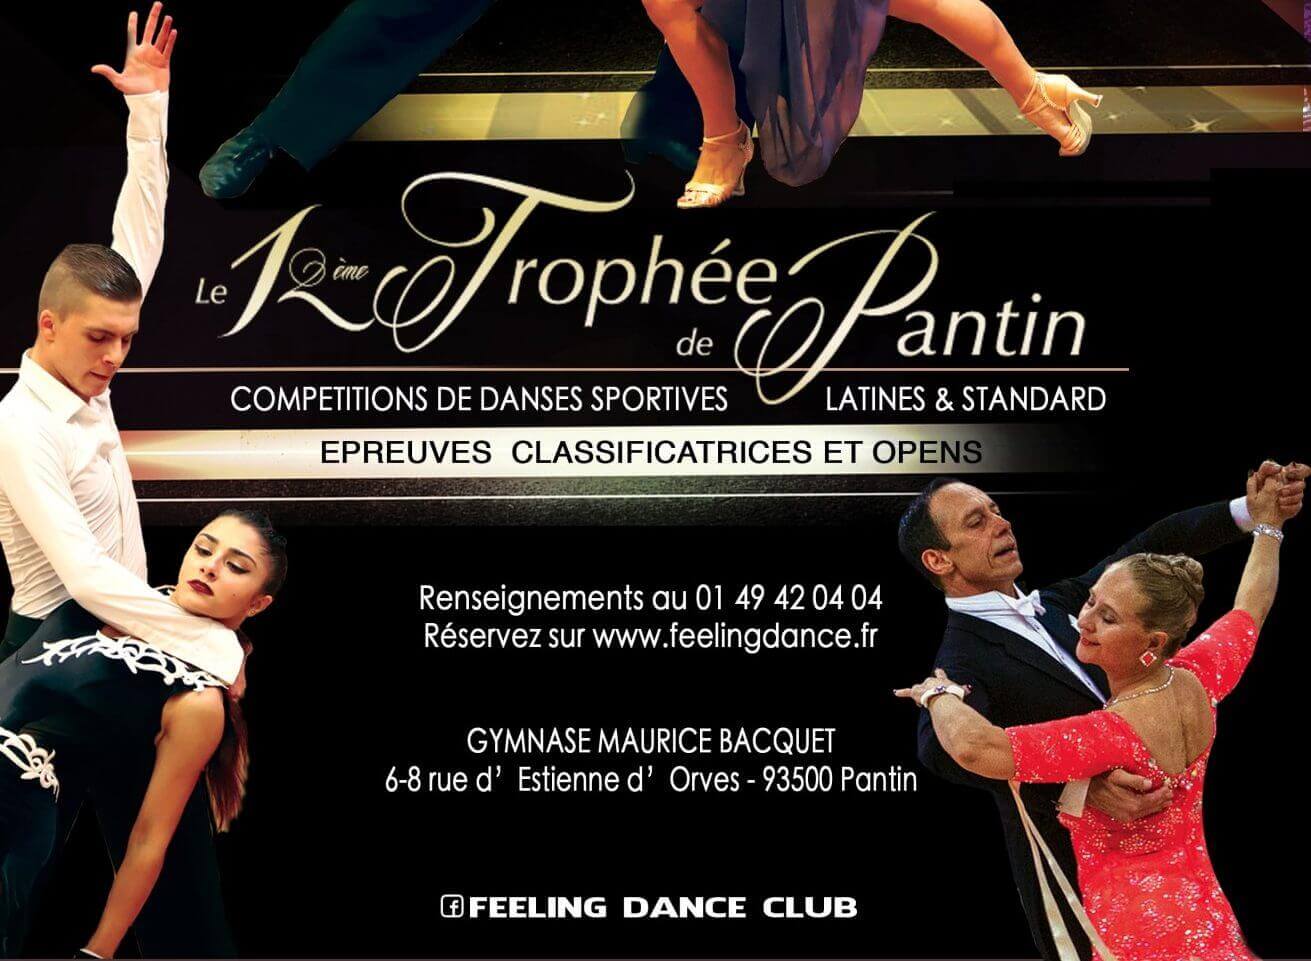 12e trophée de Pantin : Une compétition de danses sportives latines et standards à ne pas manquer ! - danse-et-vous.com